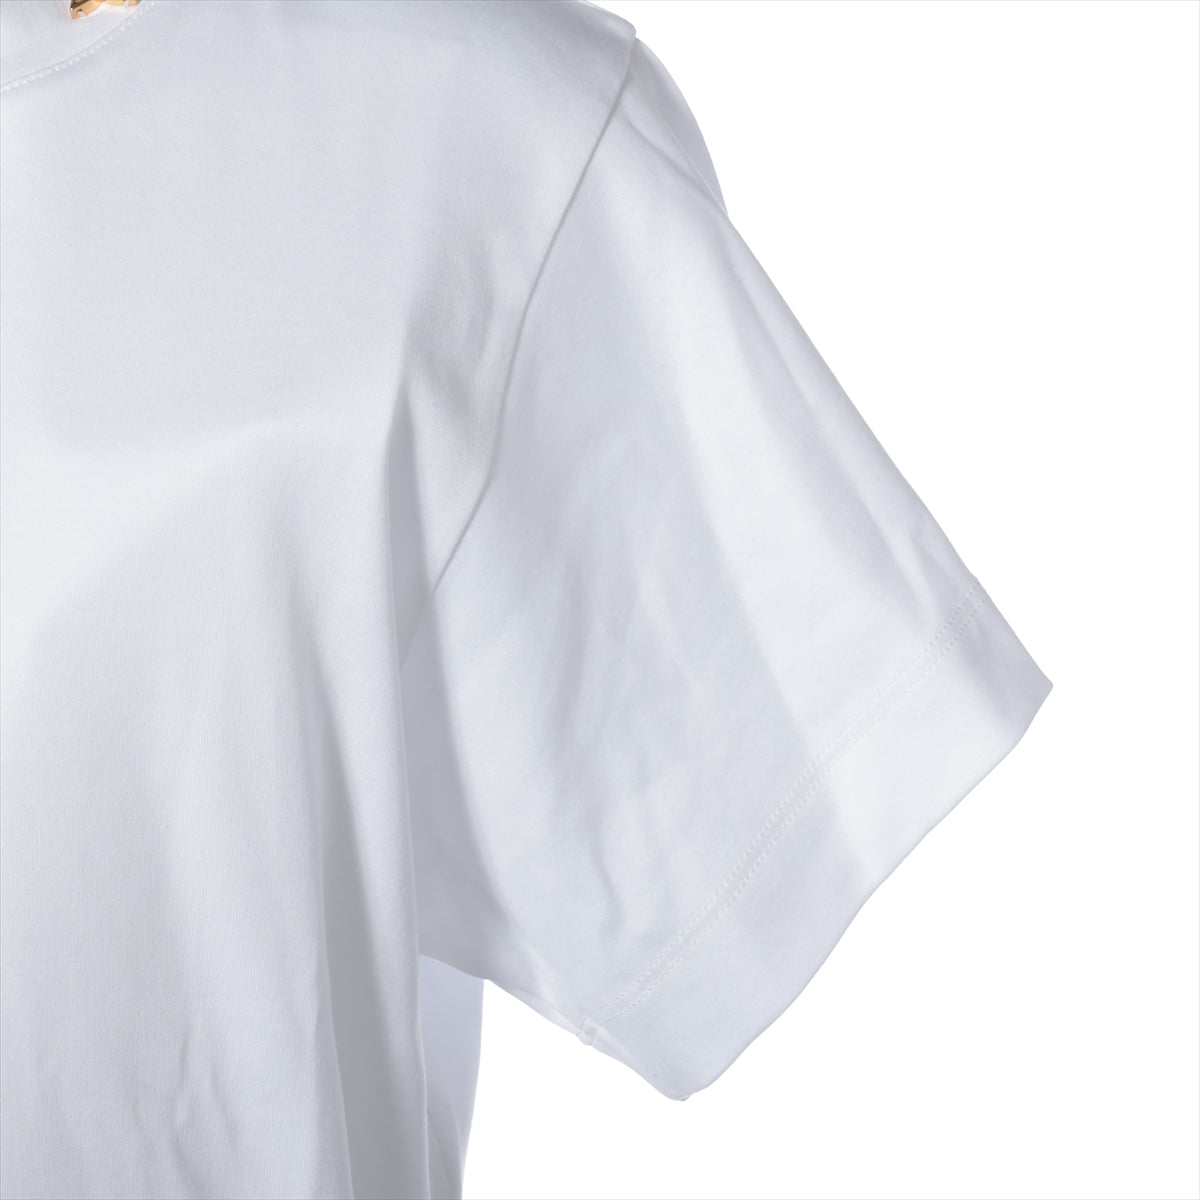 Louis Vuitton 23AW Cotton & silk T-shirt XS Ladies' White  RW232W